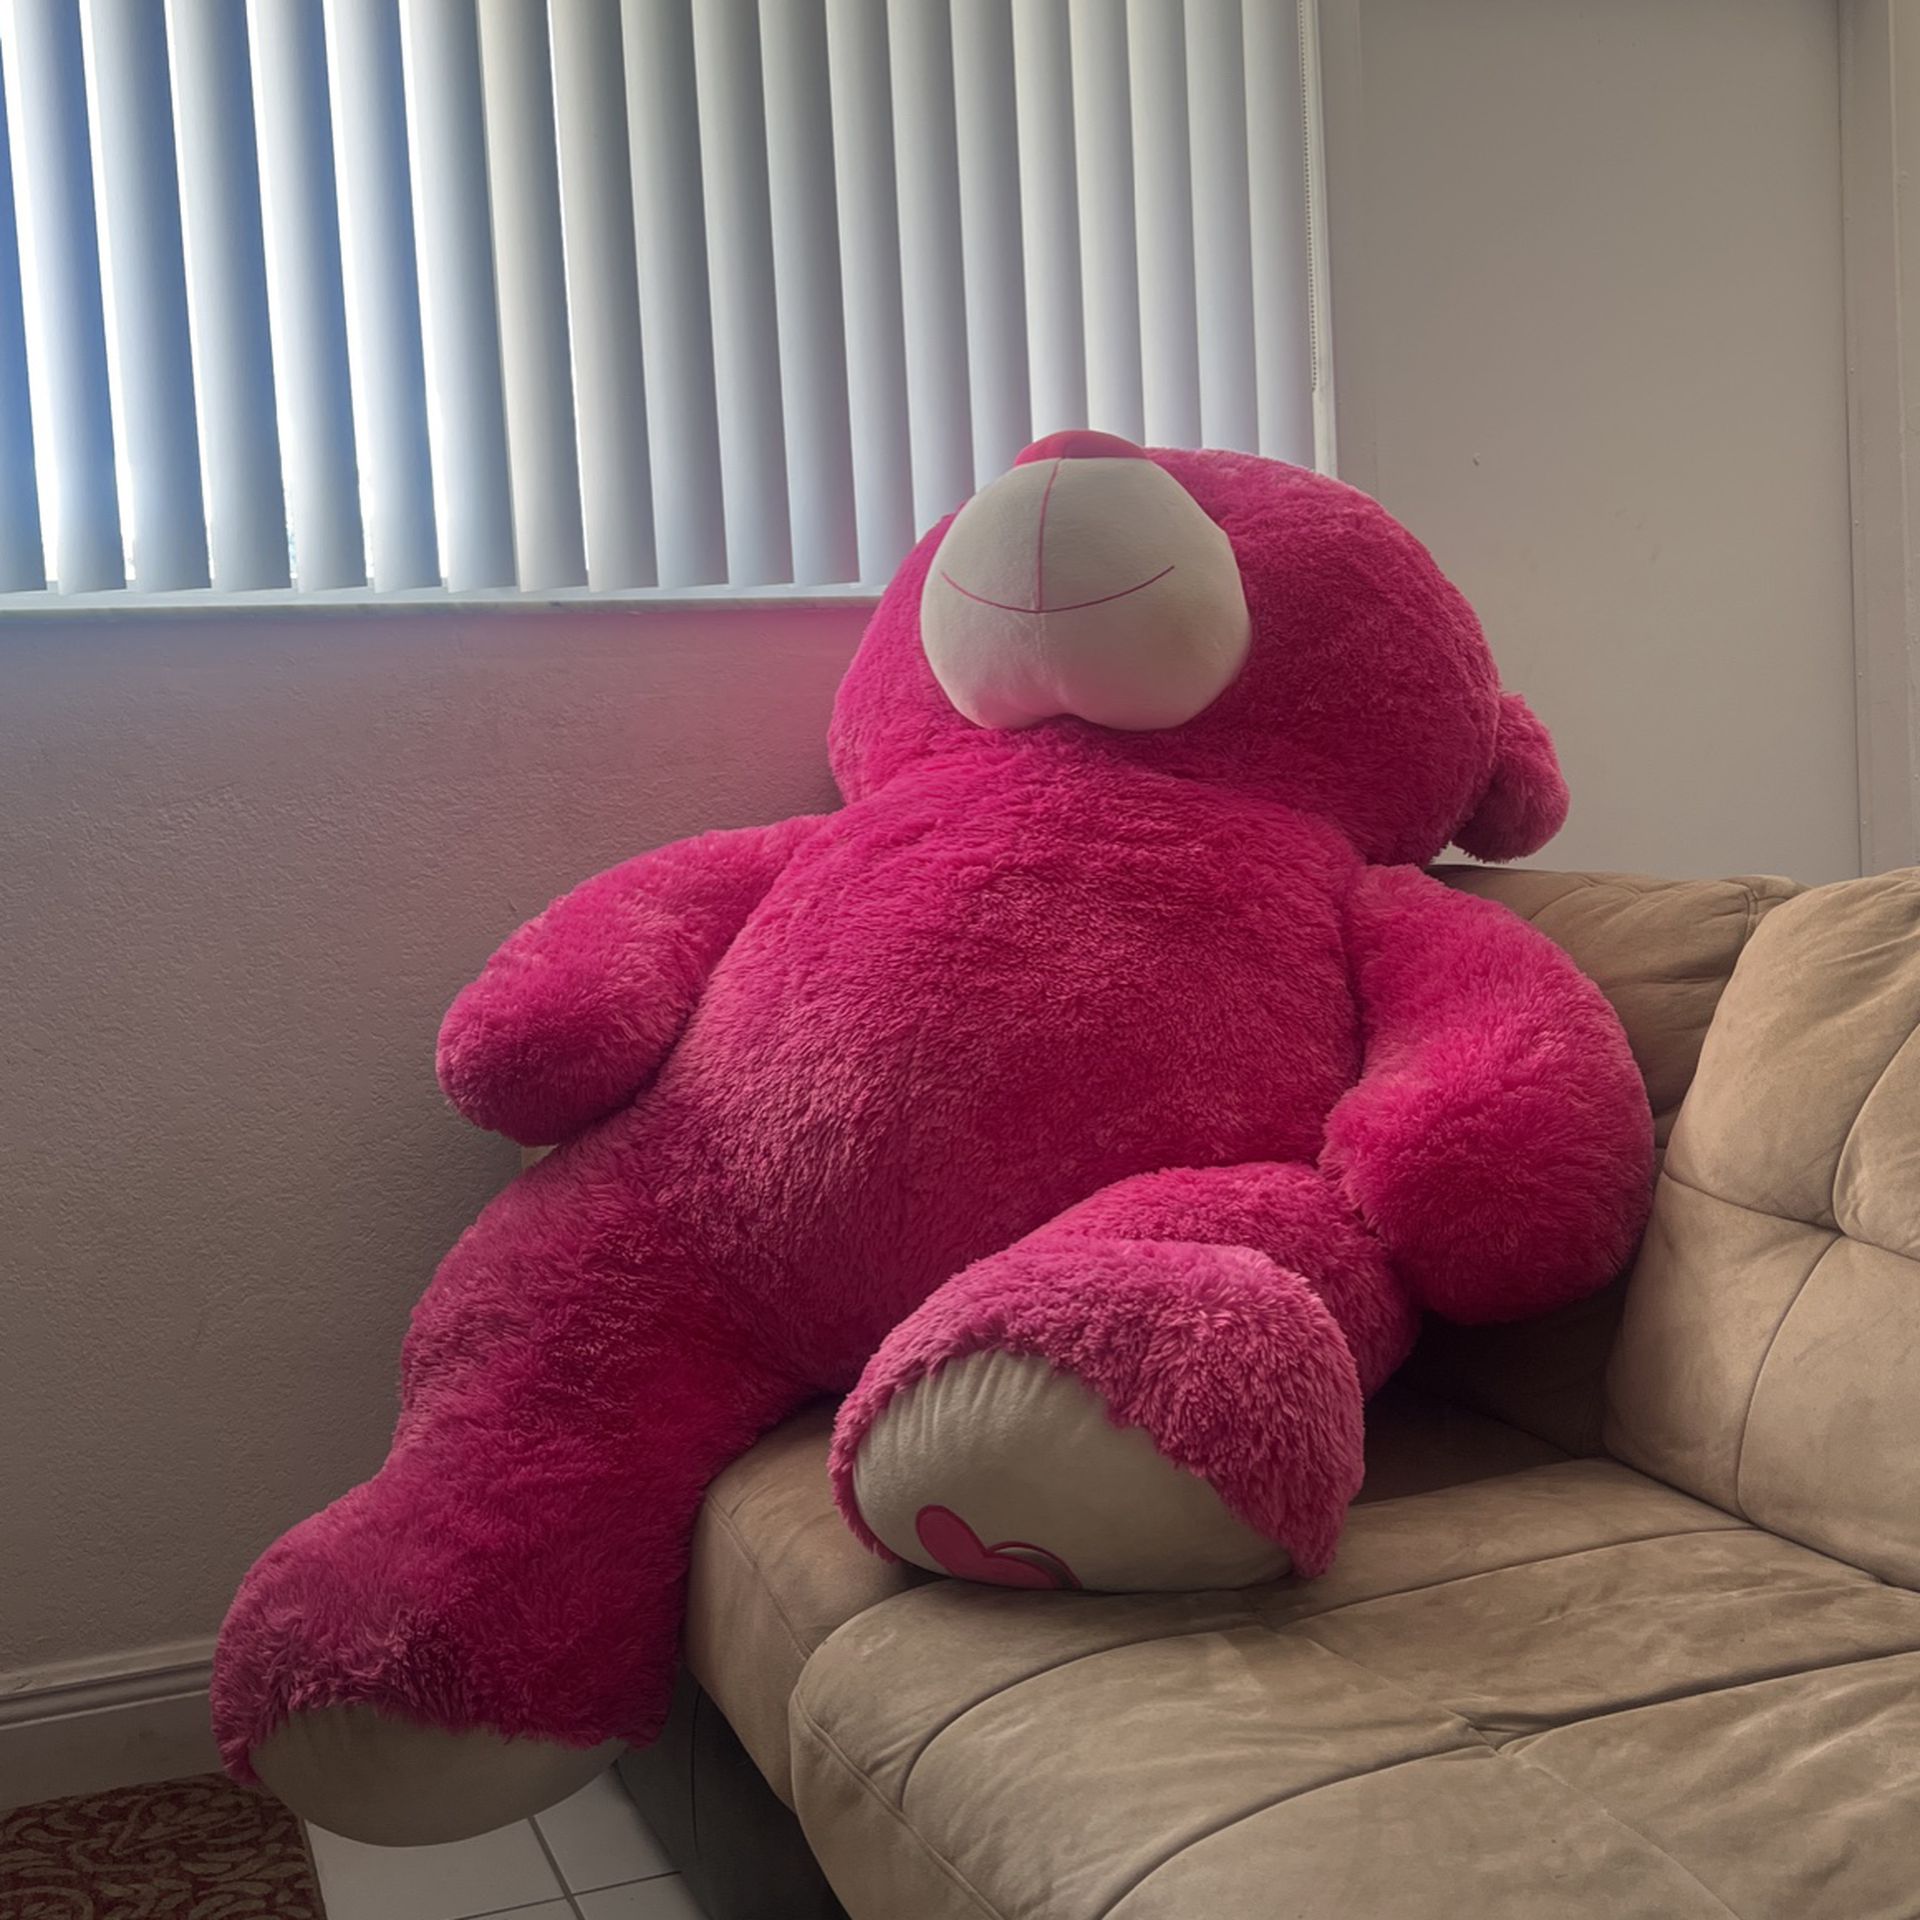 BIG Size Pink Teddy Bear 